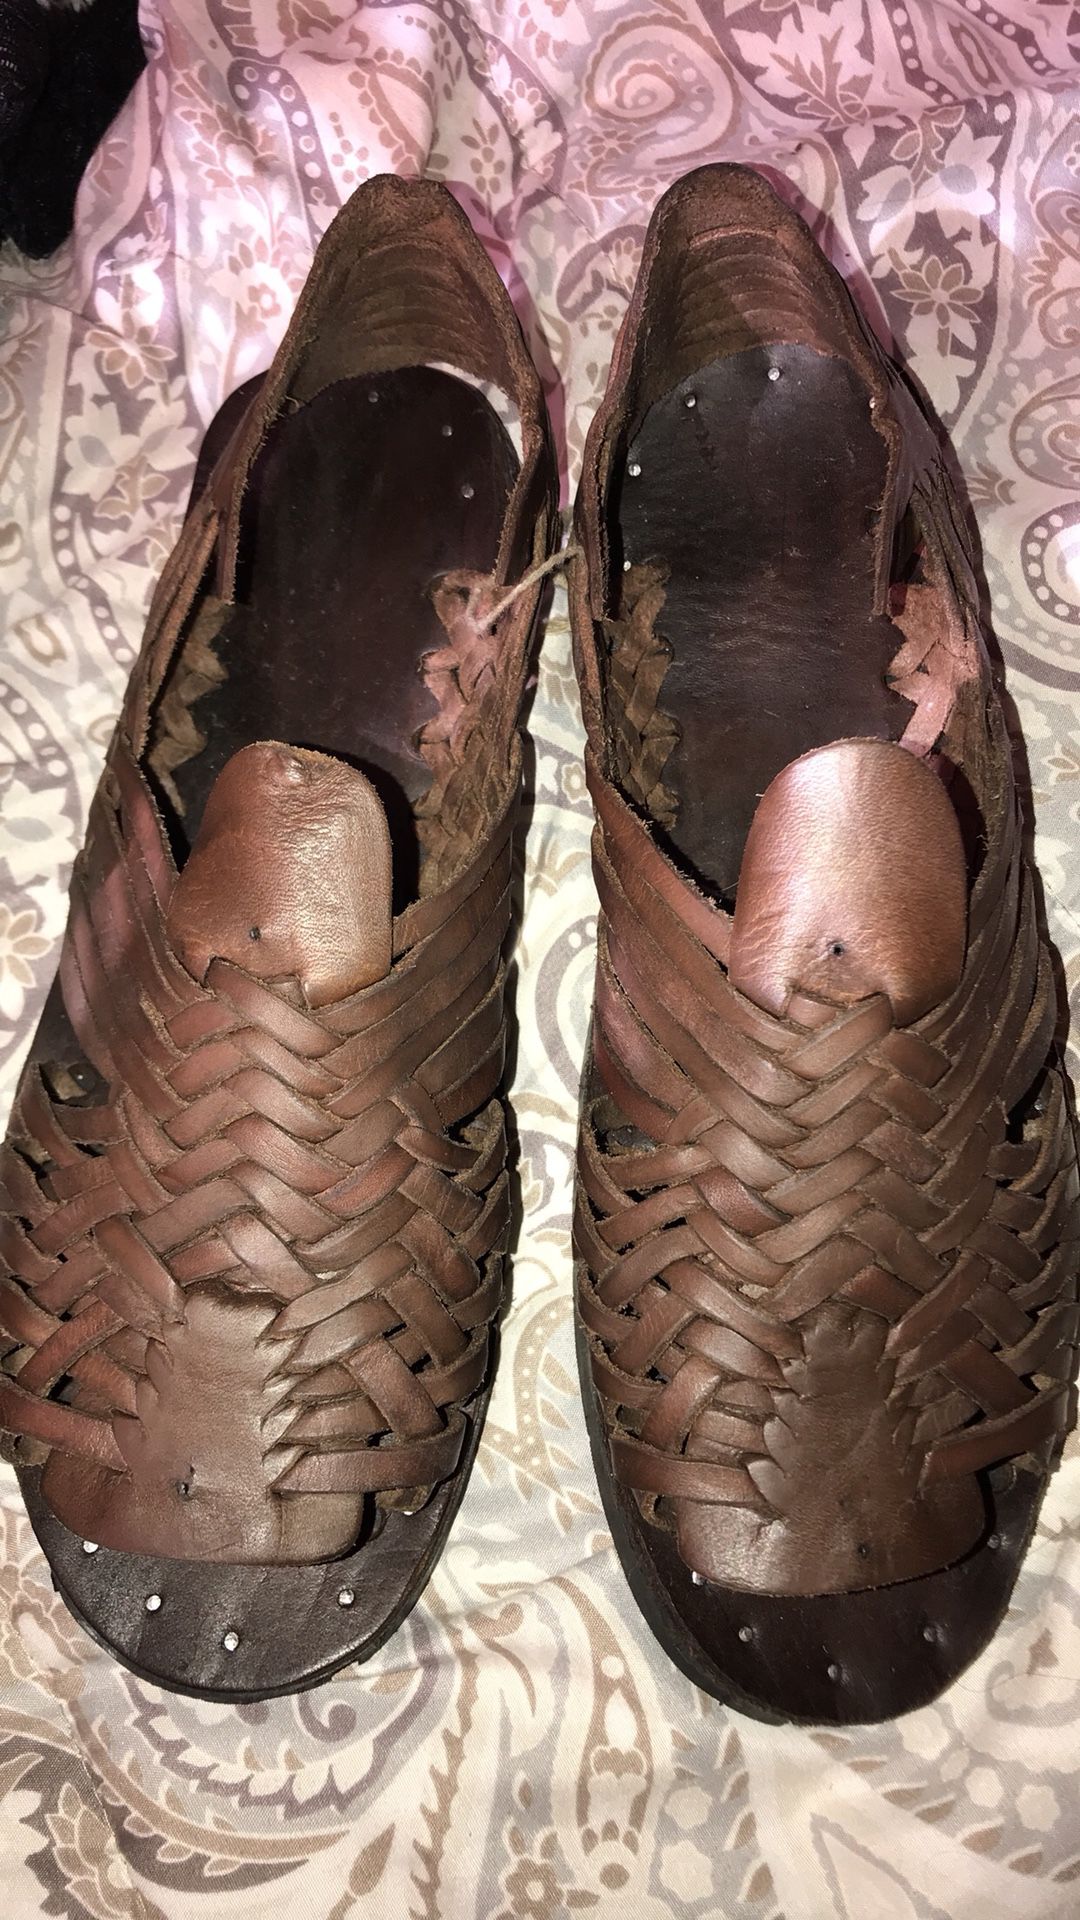 Chanclas Mexico sandals